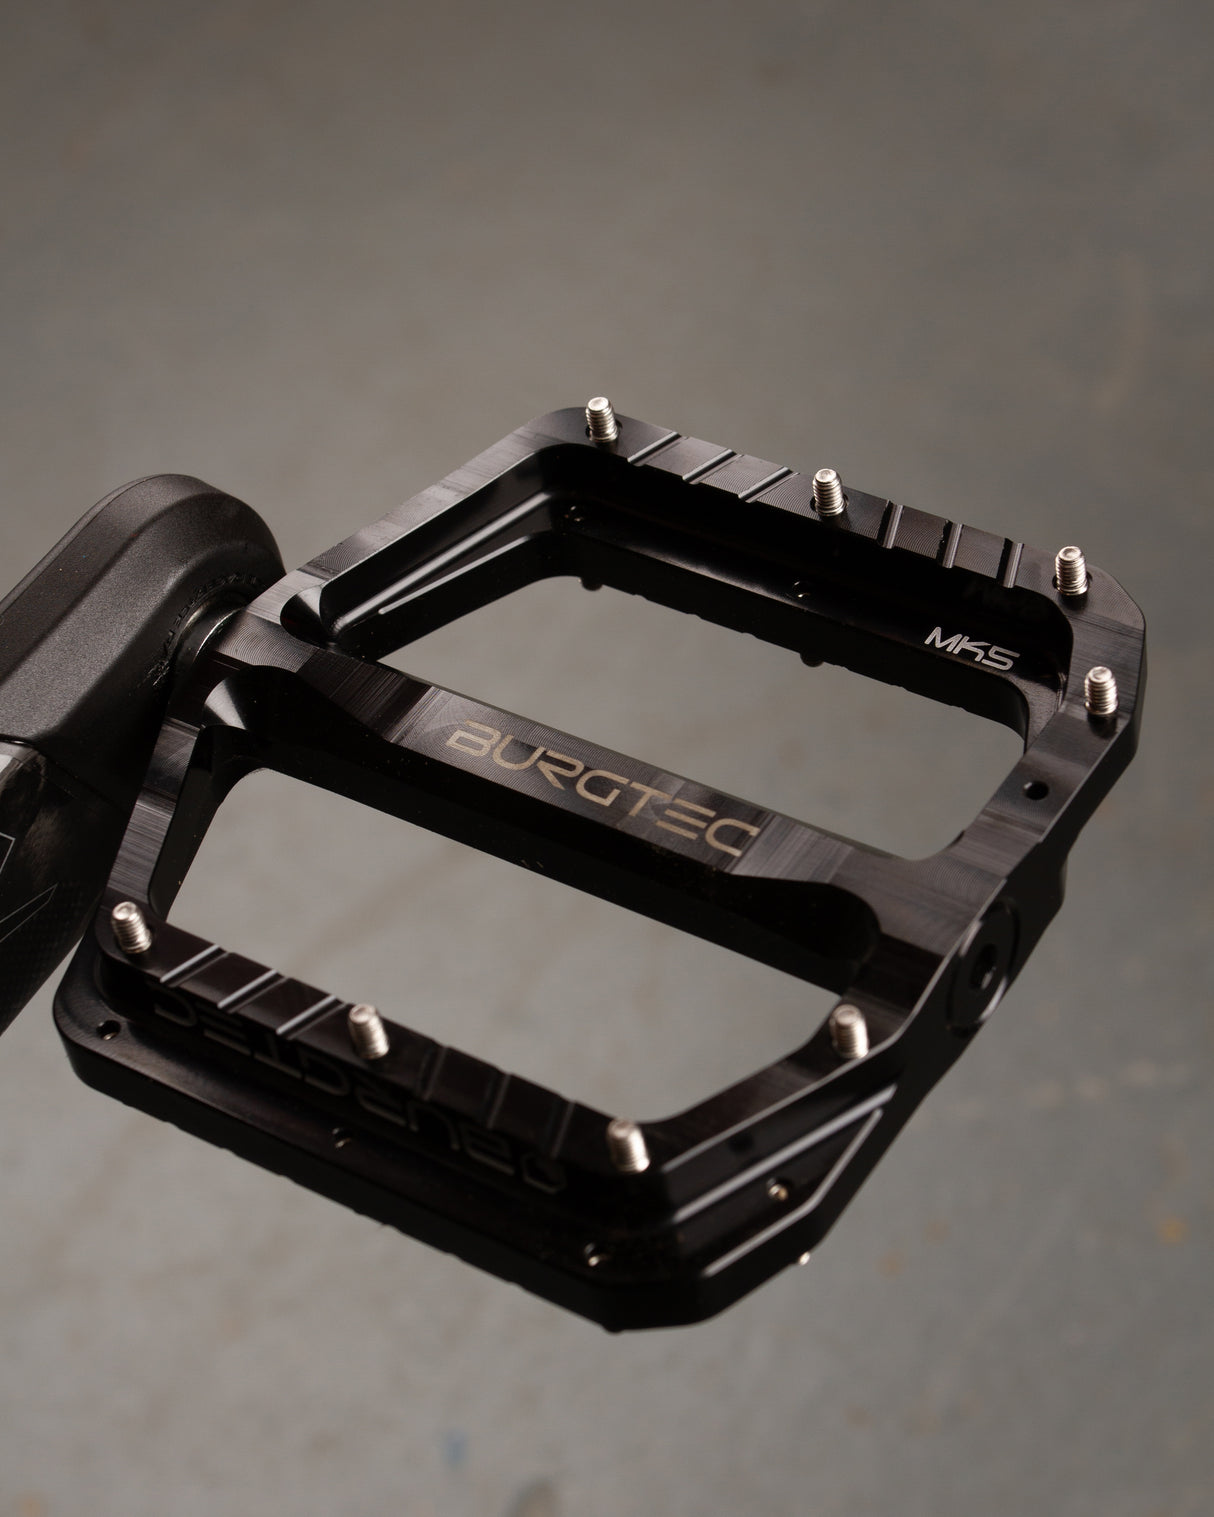 MK4 Composite Pedals - Burgtec Black